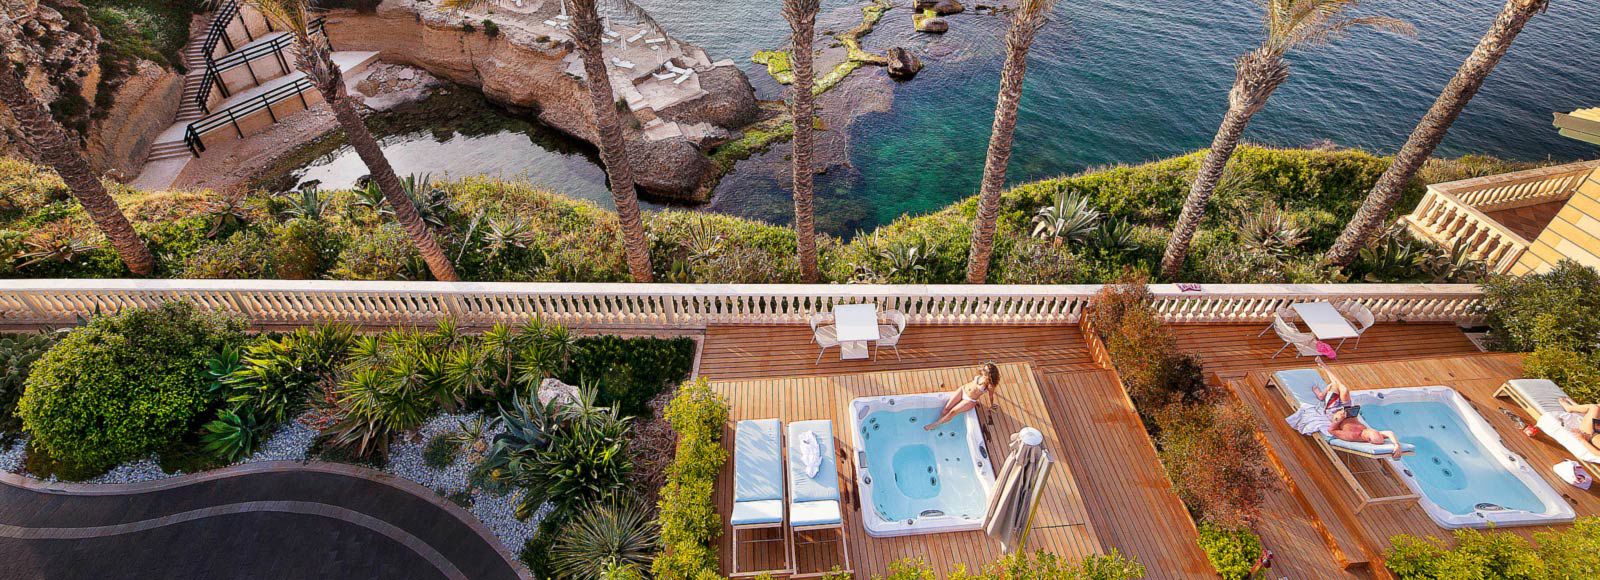 Un resort Spa in Sicilia per il tuo benessere 3